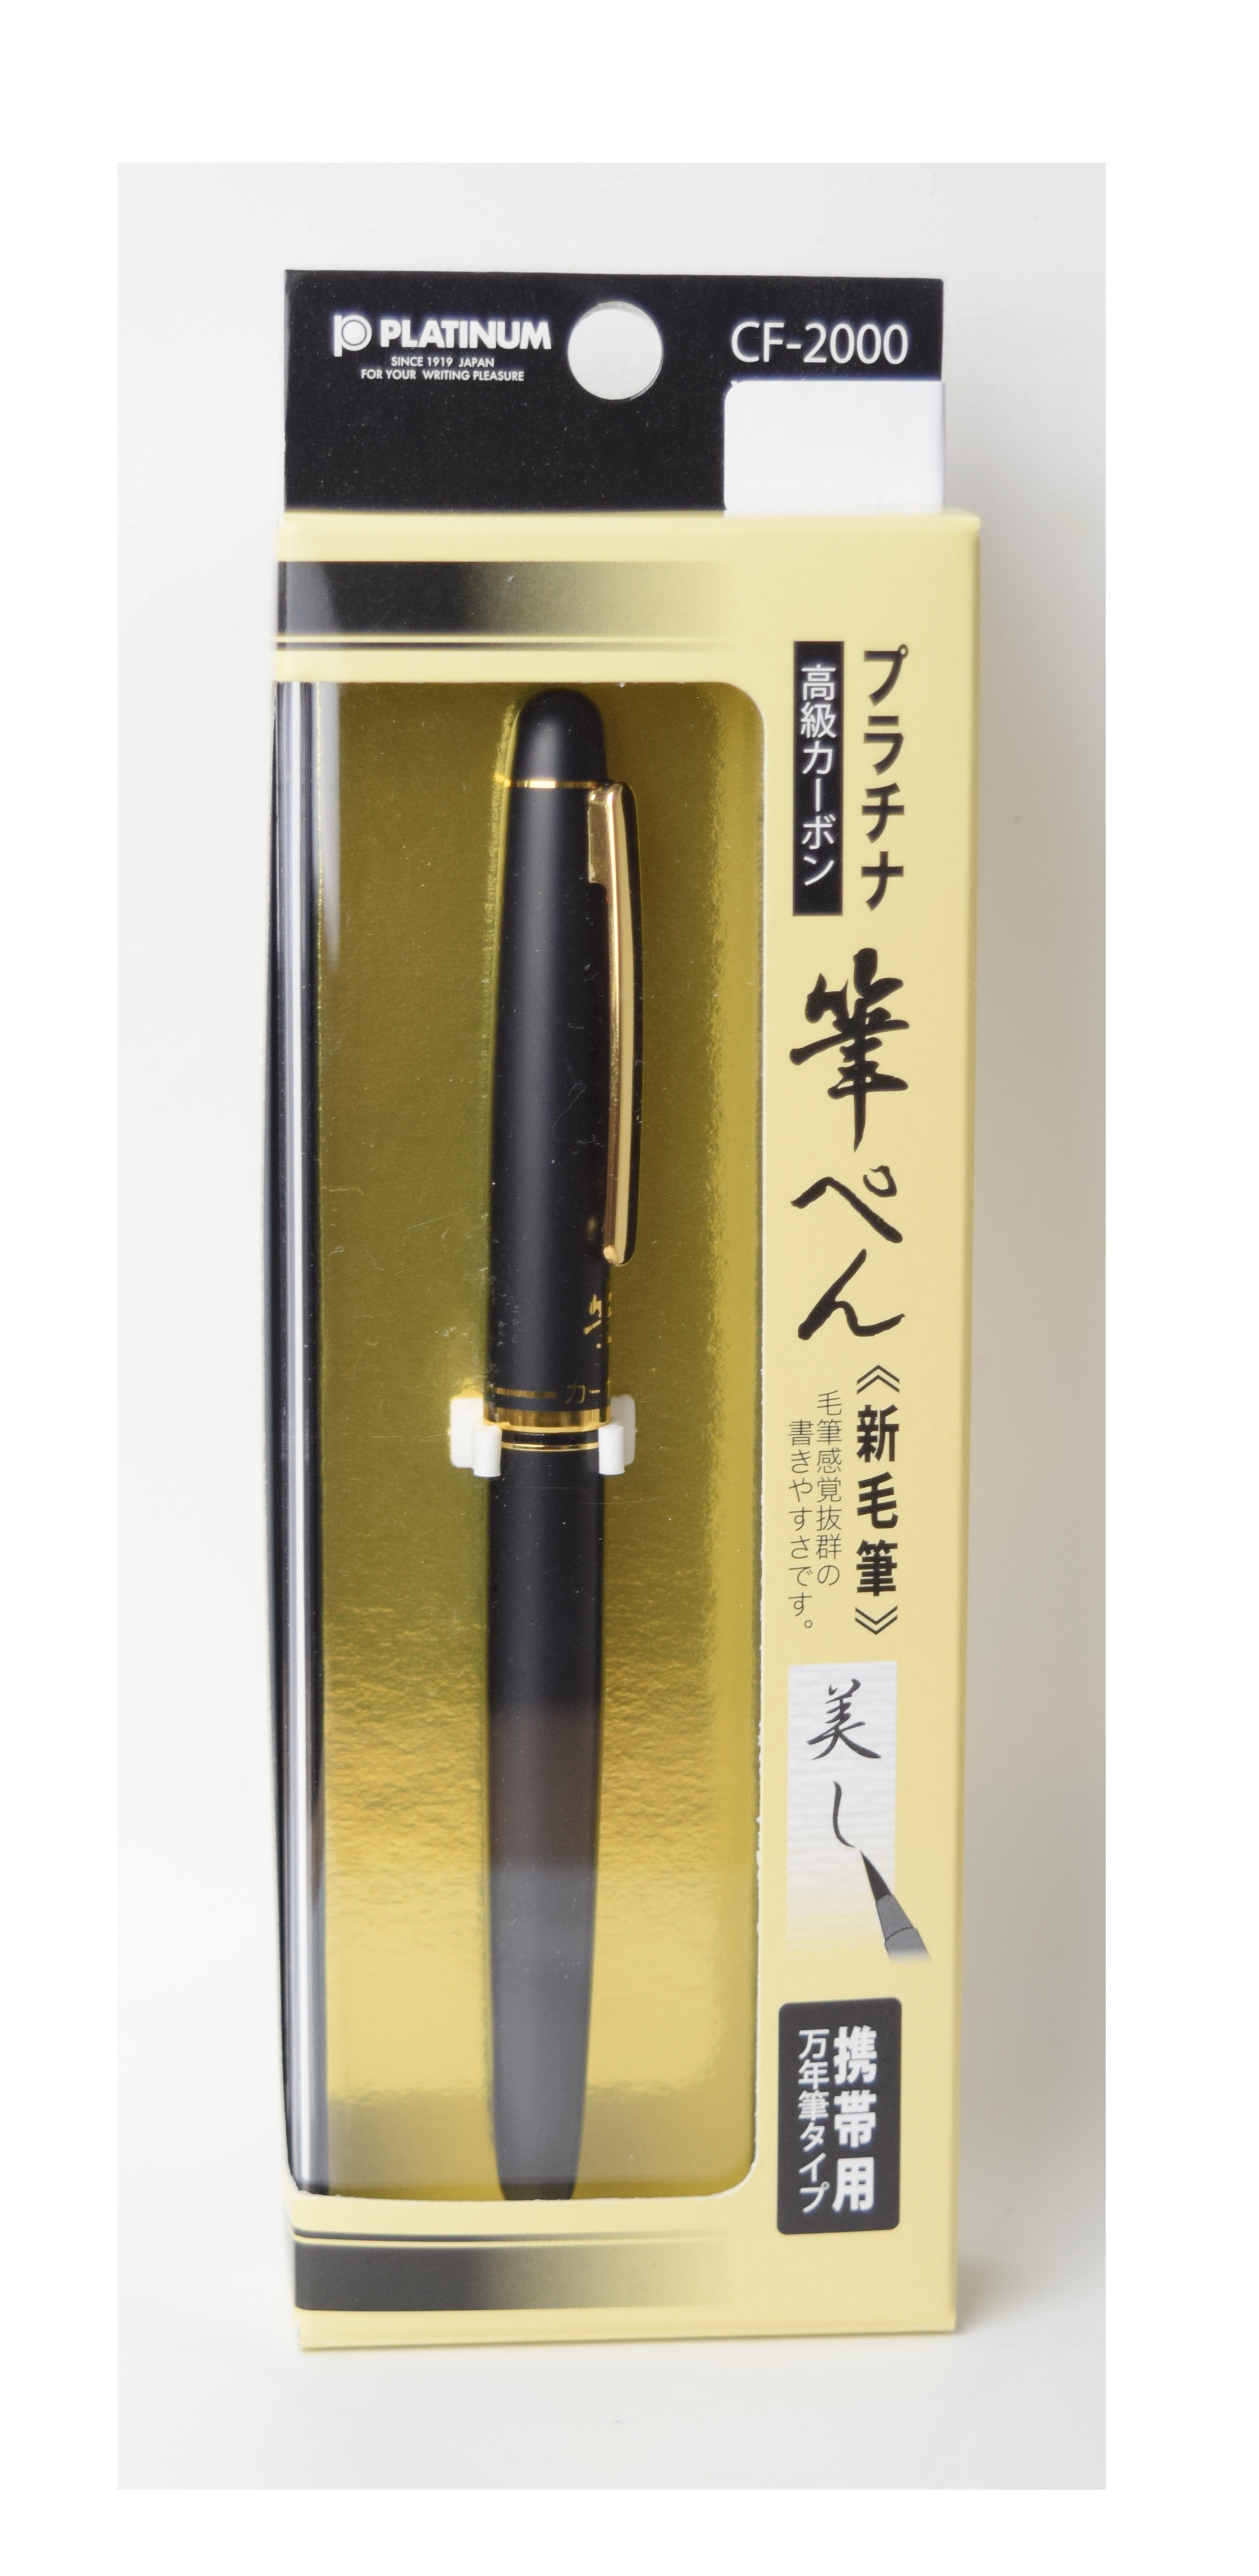 Platinum Brush Pen with Gold Trim